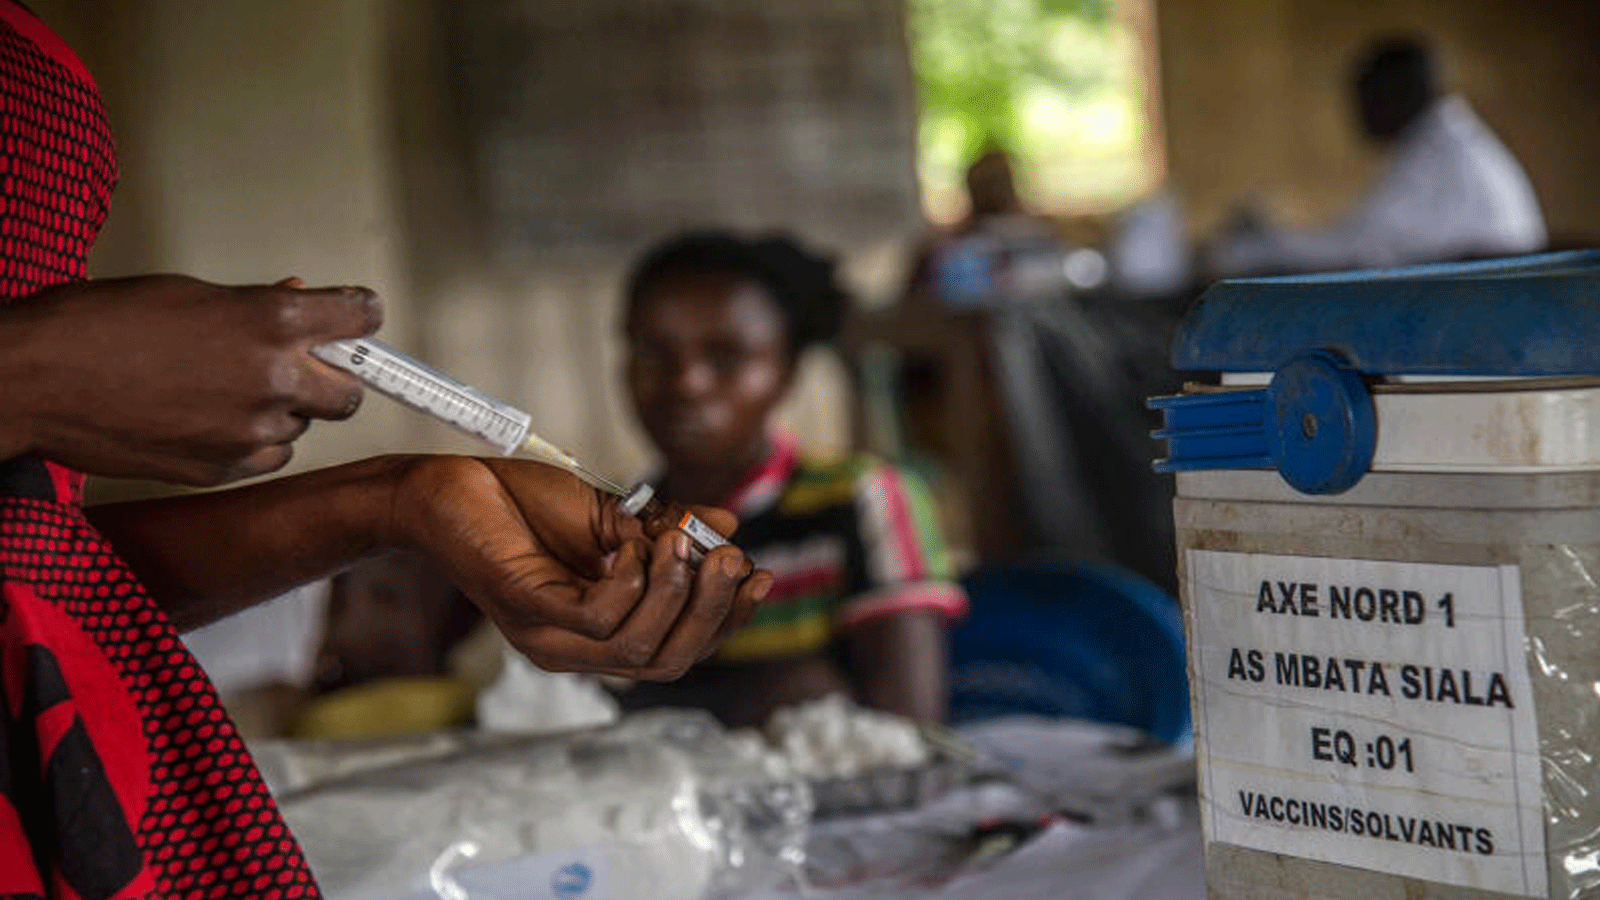 أطفال ينتظرون تسجيلهم قبل التطعيم ضد الحصبة في مركز في مباتا سيالا، بالقرب من سيكي بانزا، غرب جمهورية الكونغو الديمقراطية. 3 مارس(آذار) 2020